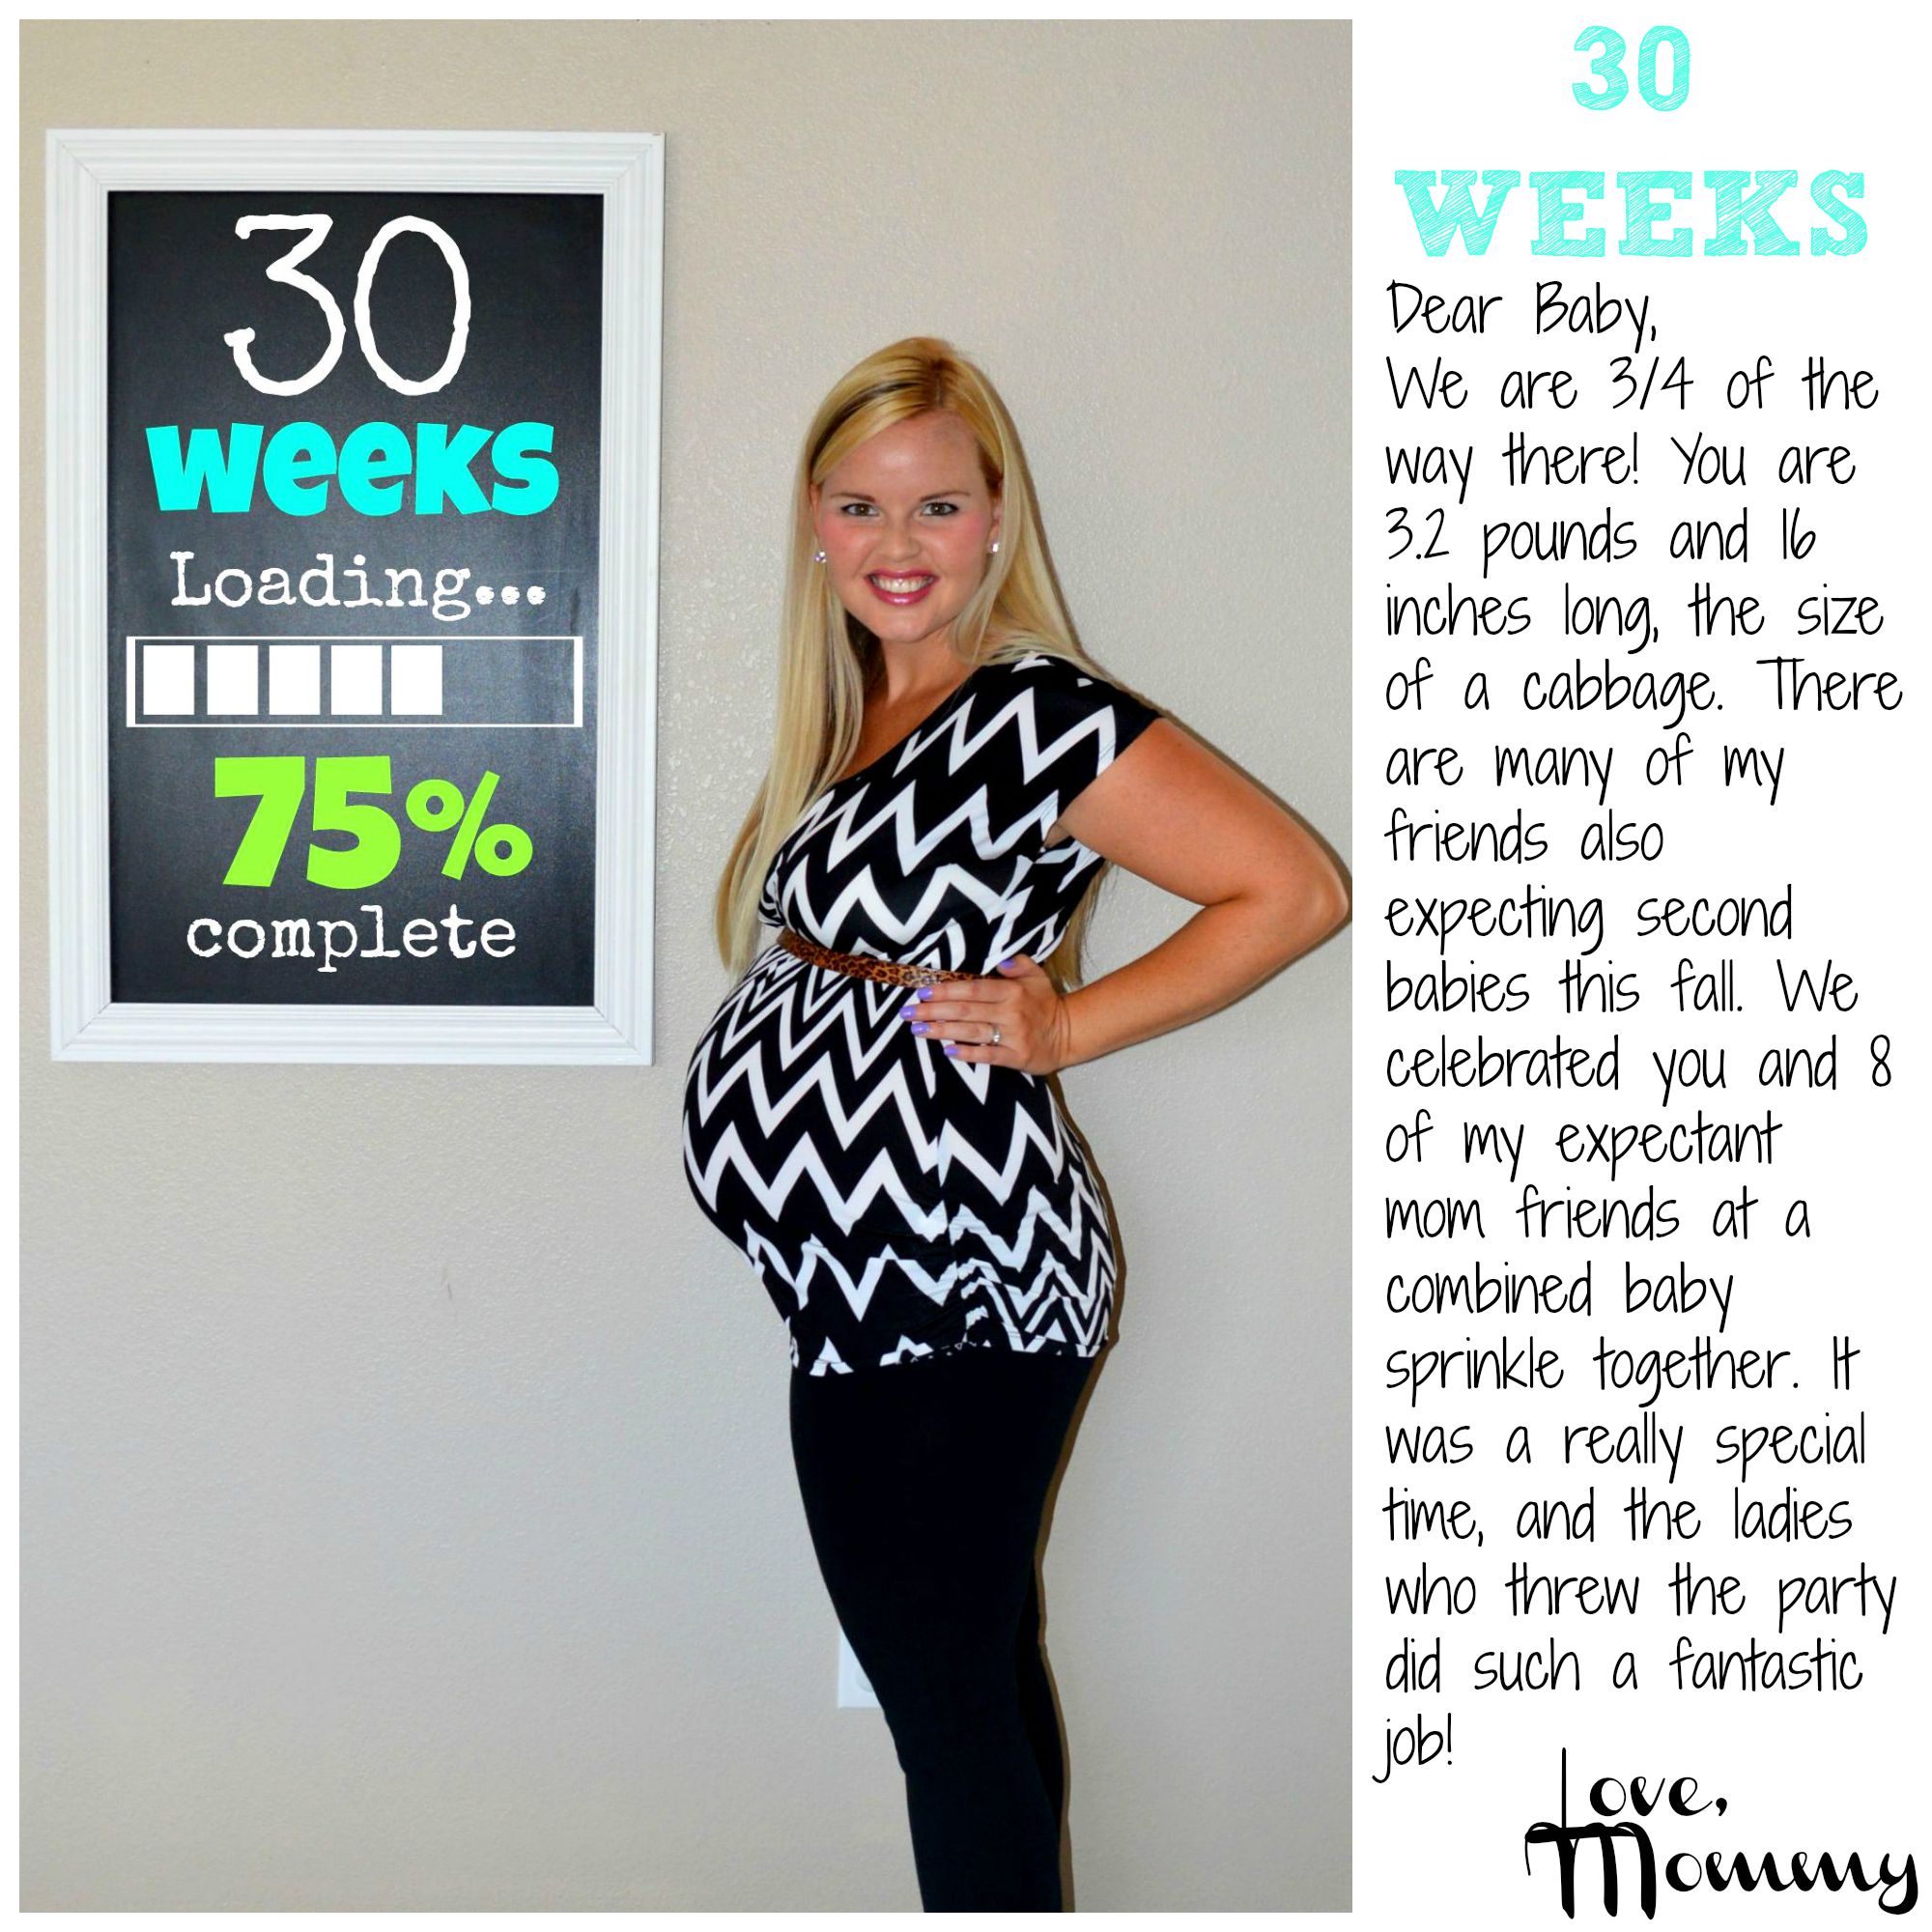 30 week fetus pictures